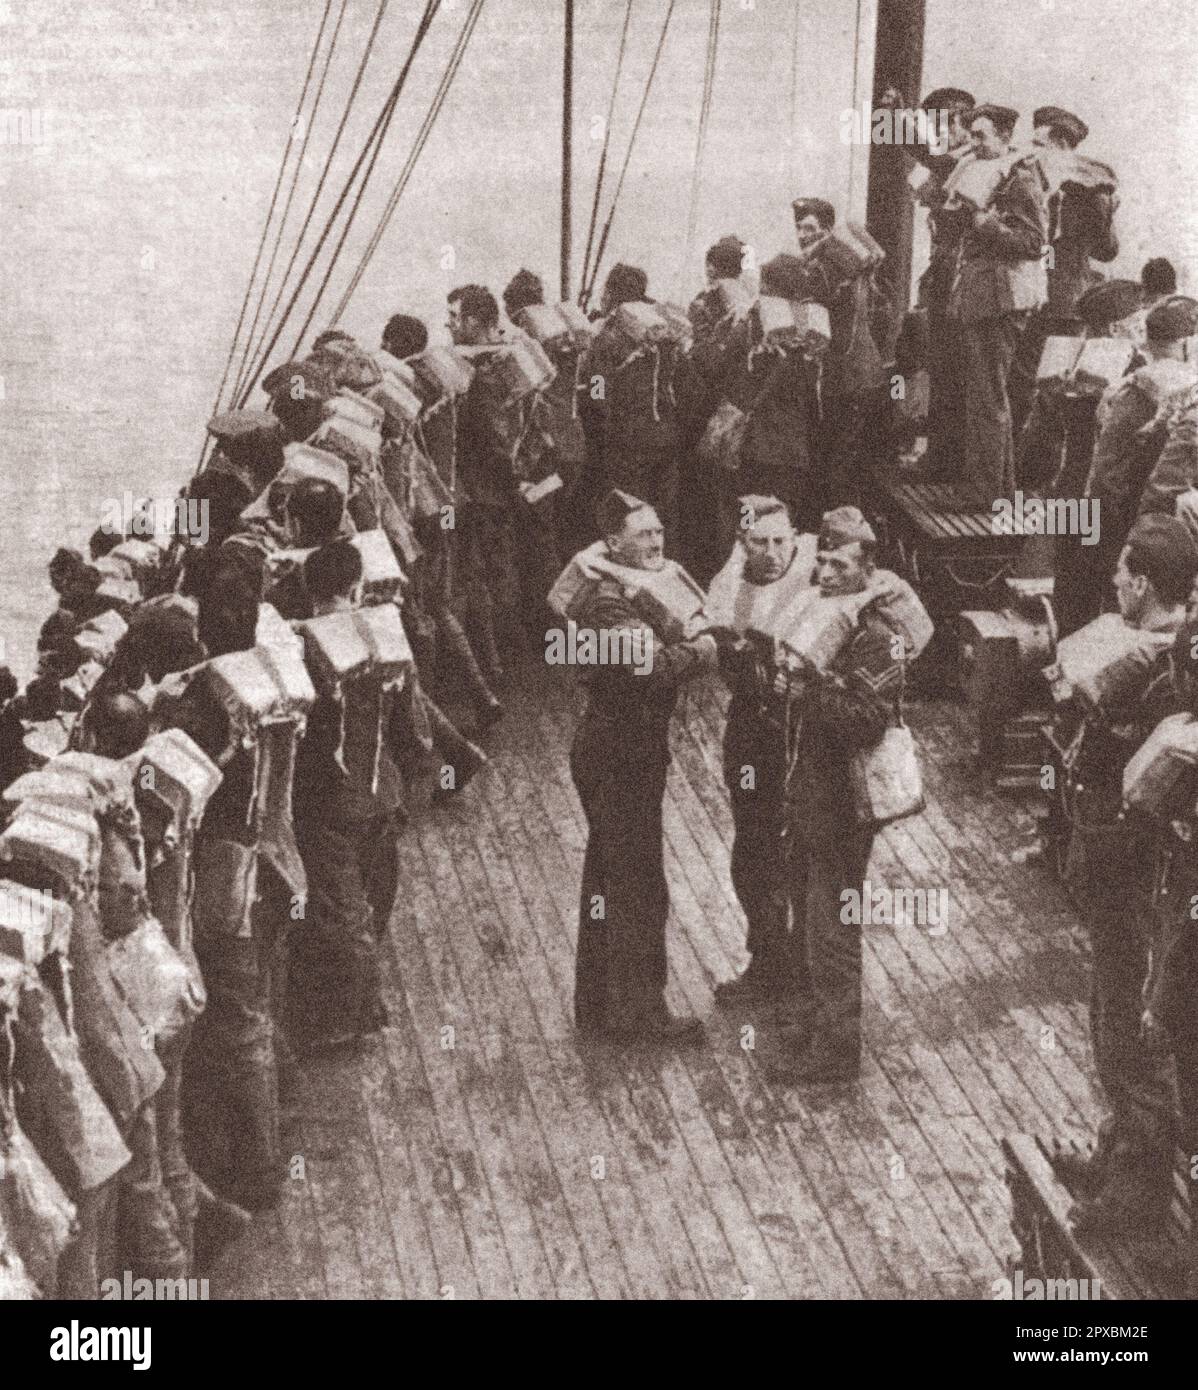 Expédition de la Force expéditionnaire britannique en France en septembre 1939. Les soldats britanniques qui traversent la Manche portent des engins de sauvetage qui les maintiennent à flot si la torpille d'un U-boat les fait prendre sur l'eau. Banque D'Images